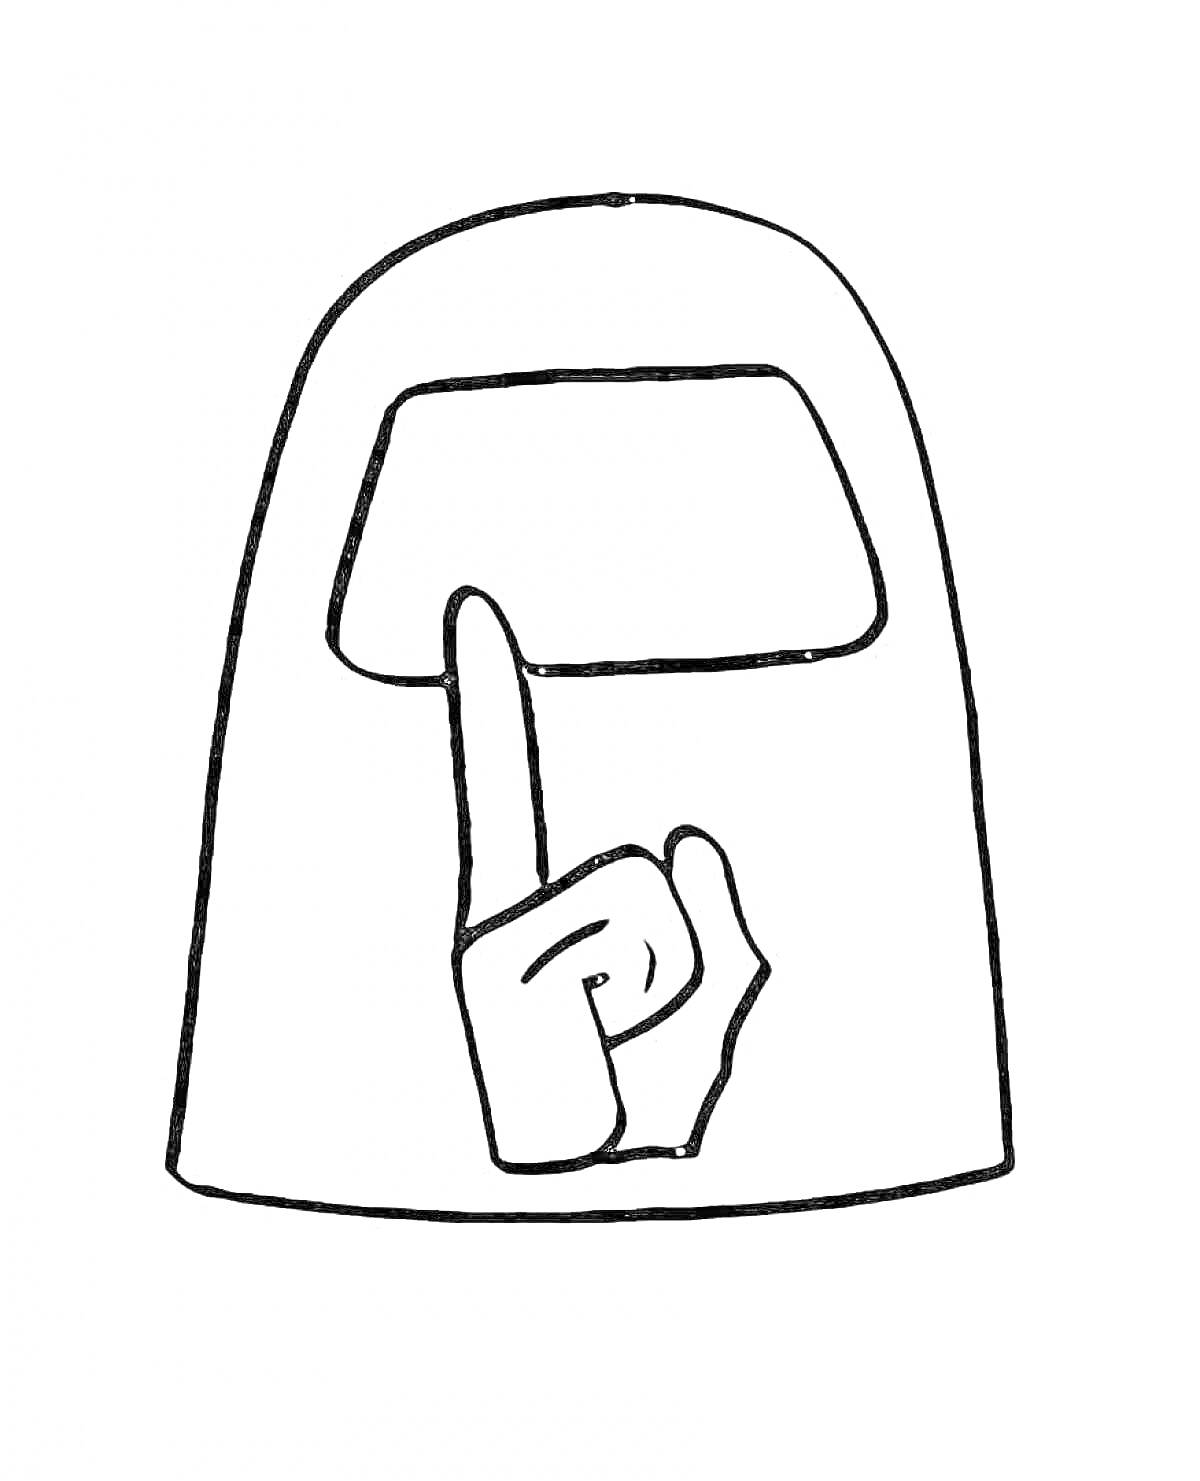 Раскраска Амонг Ас персонаж с поднятым вверх пальцем на шлеме